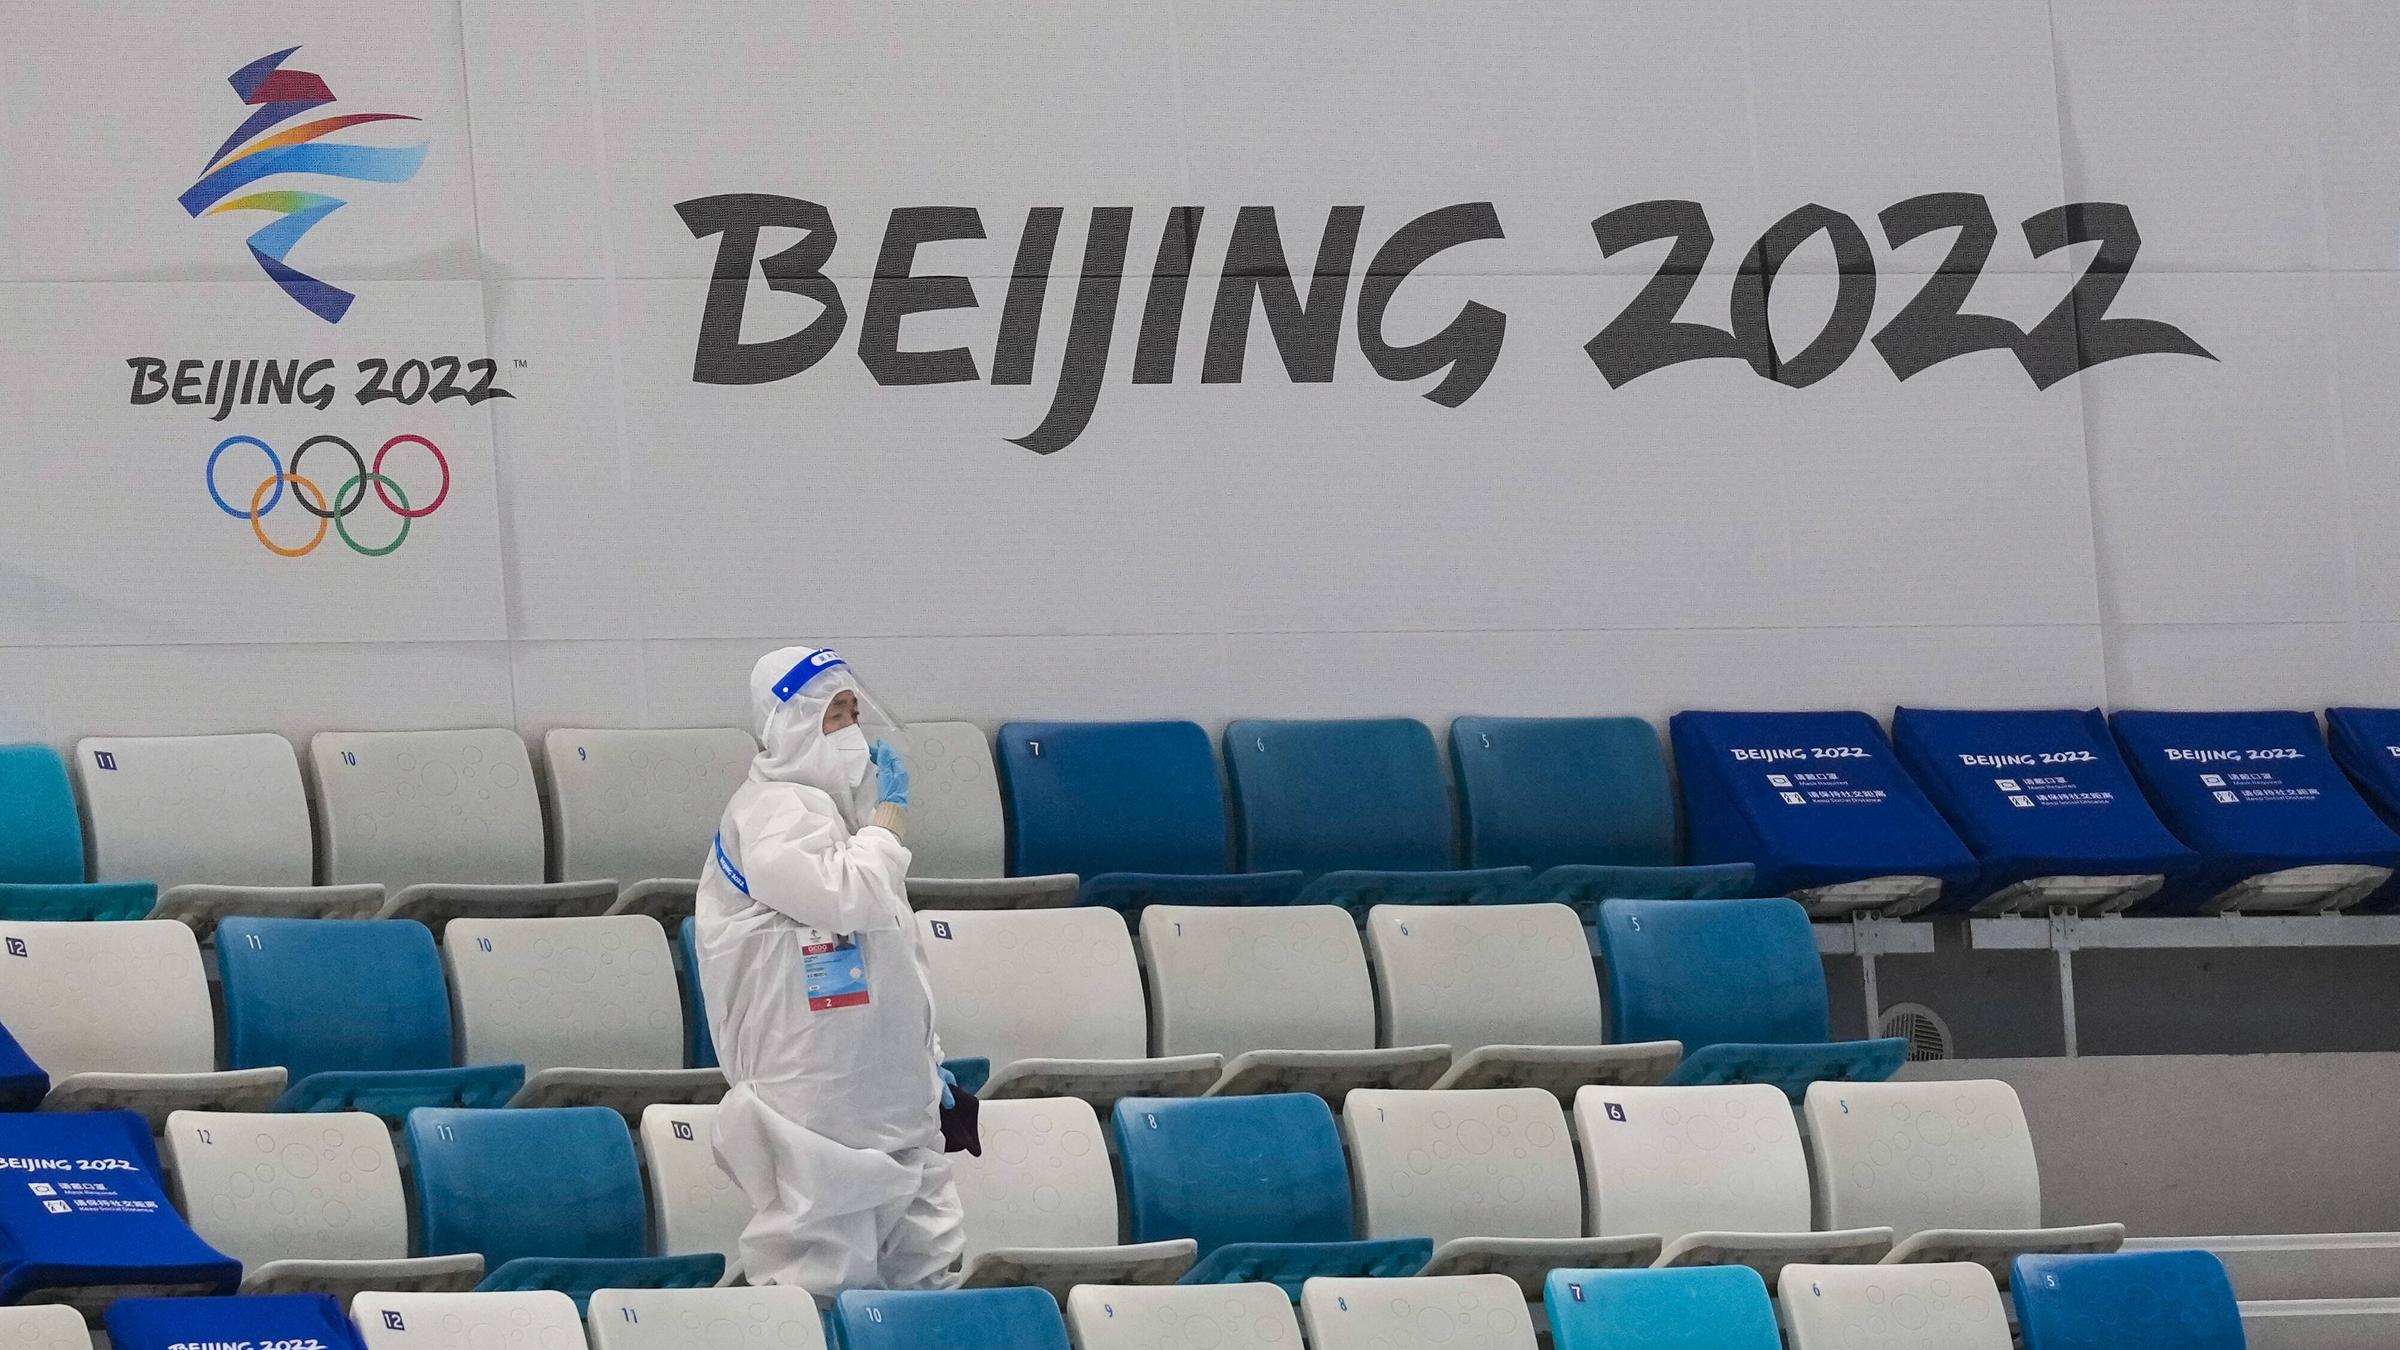 In einem leeren Stadion läuft eine Person mit weißen Ganzkörperanzug, als Schutz vor dem Virus.